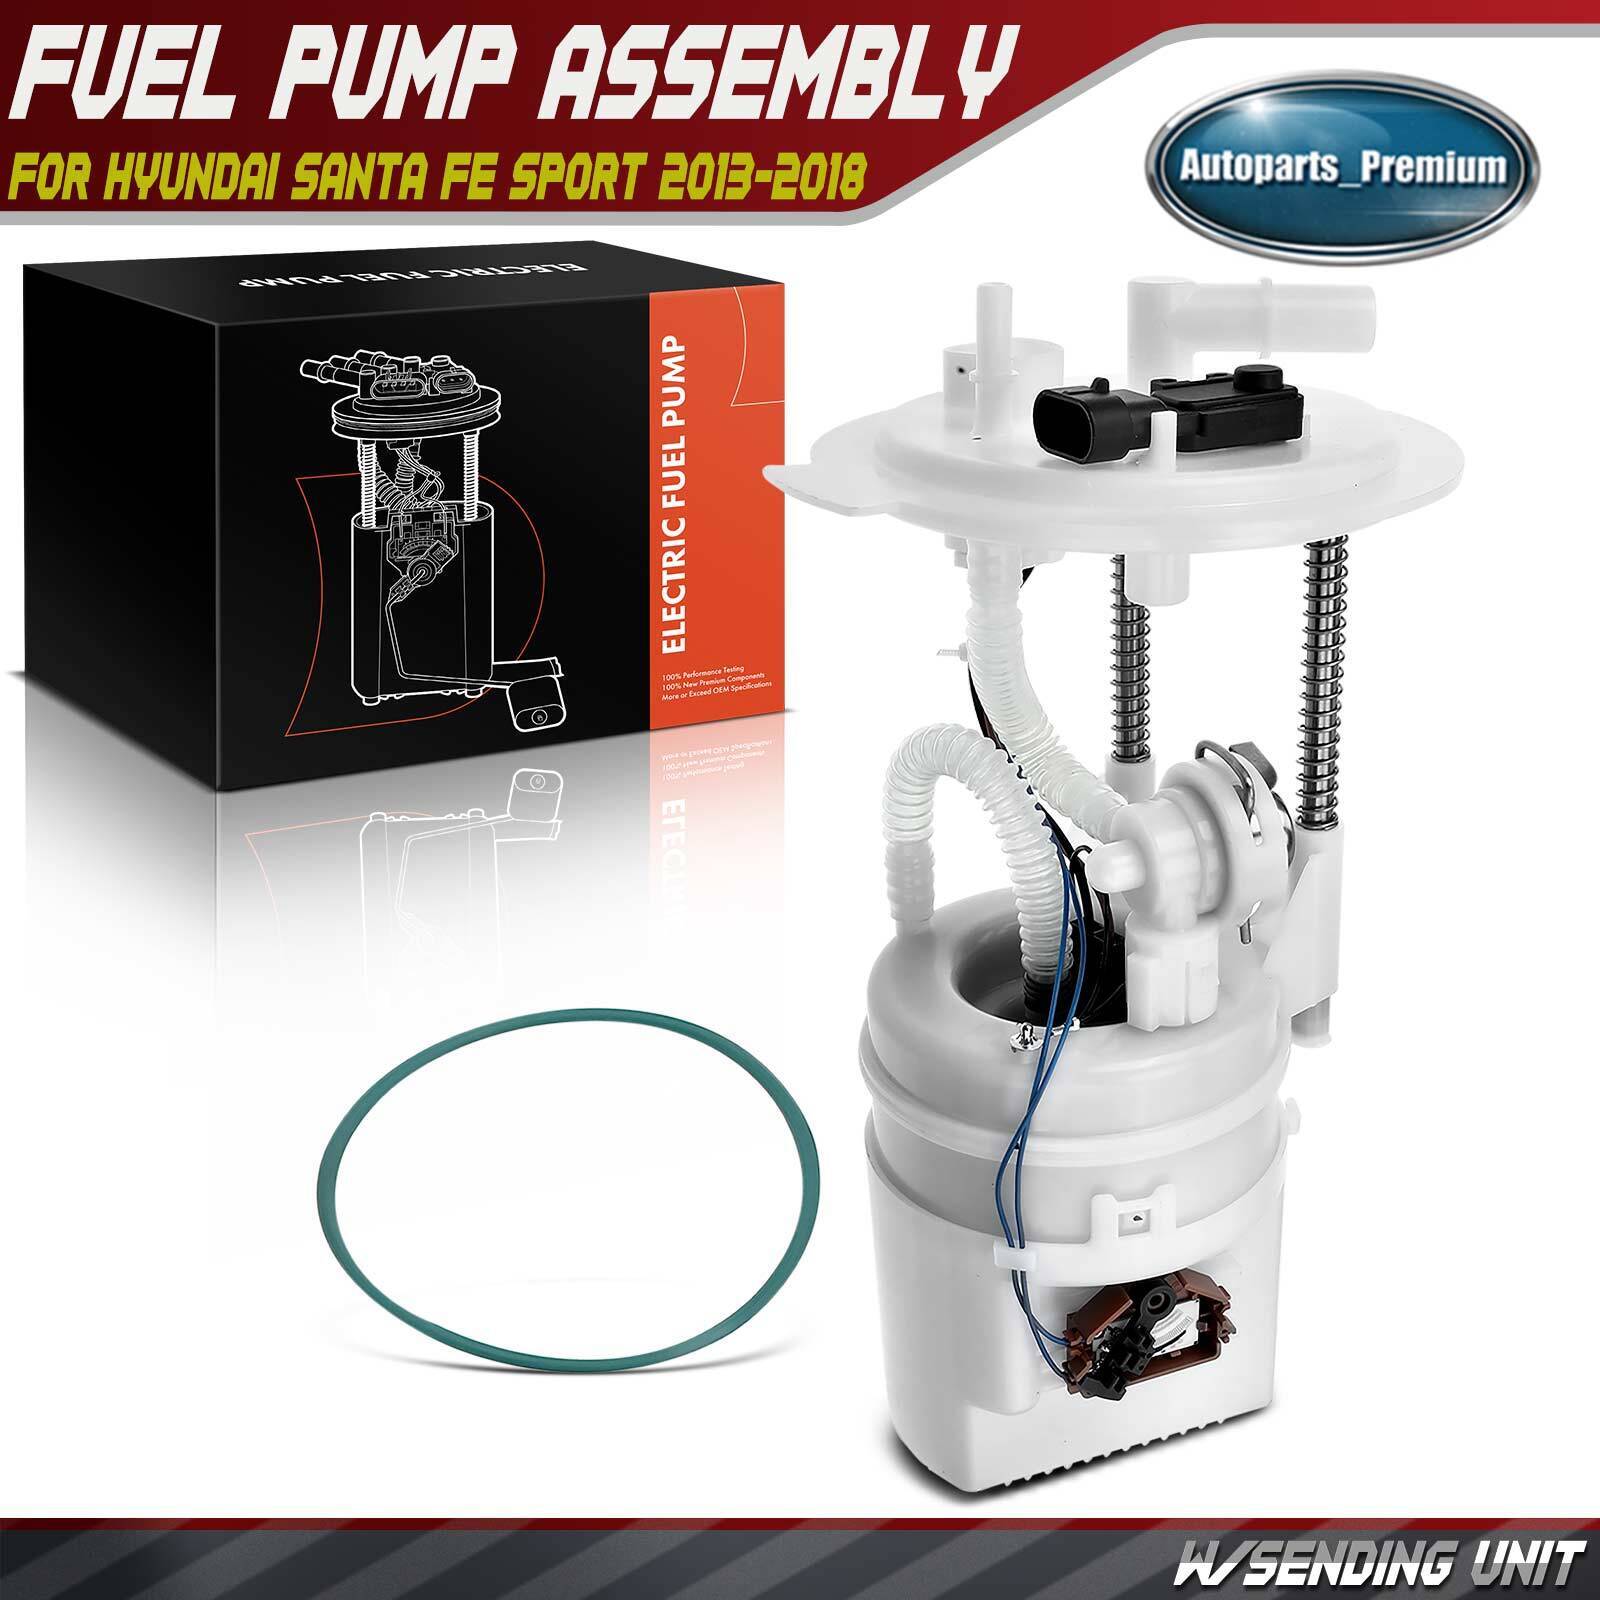 Fuel Pump Assembly for Hyundai Santa Fe Sport 2013-2018 Sorento 2014-2015 2.4L